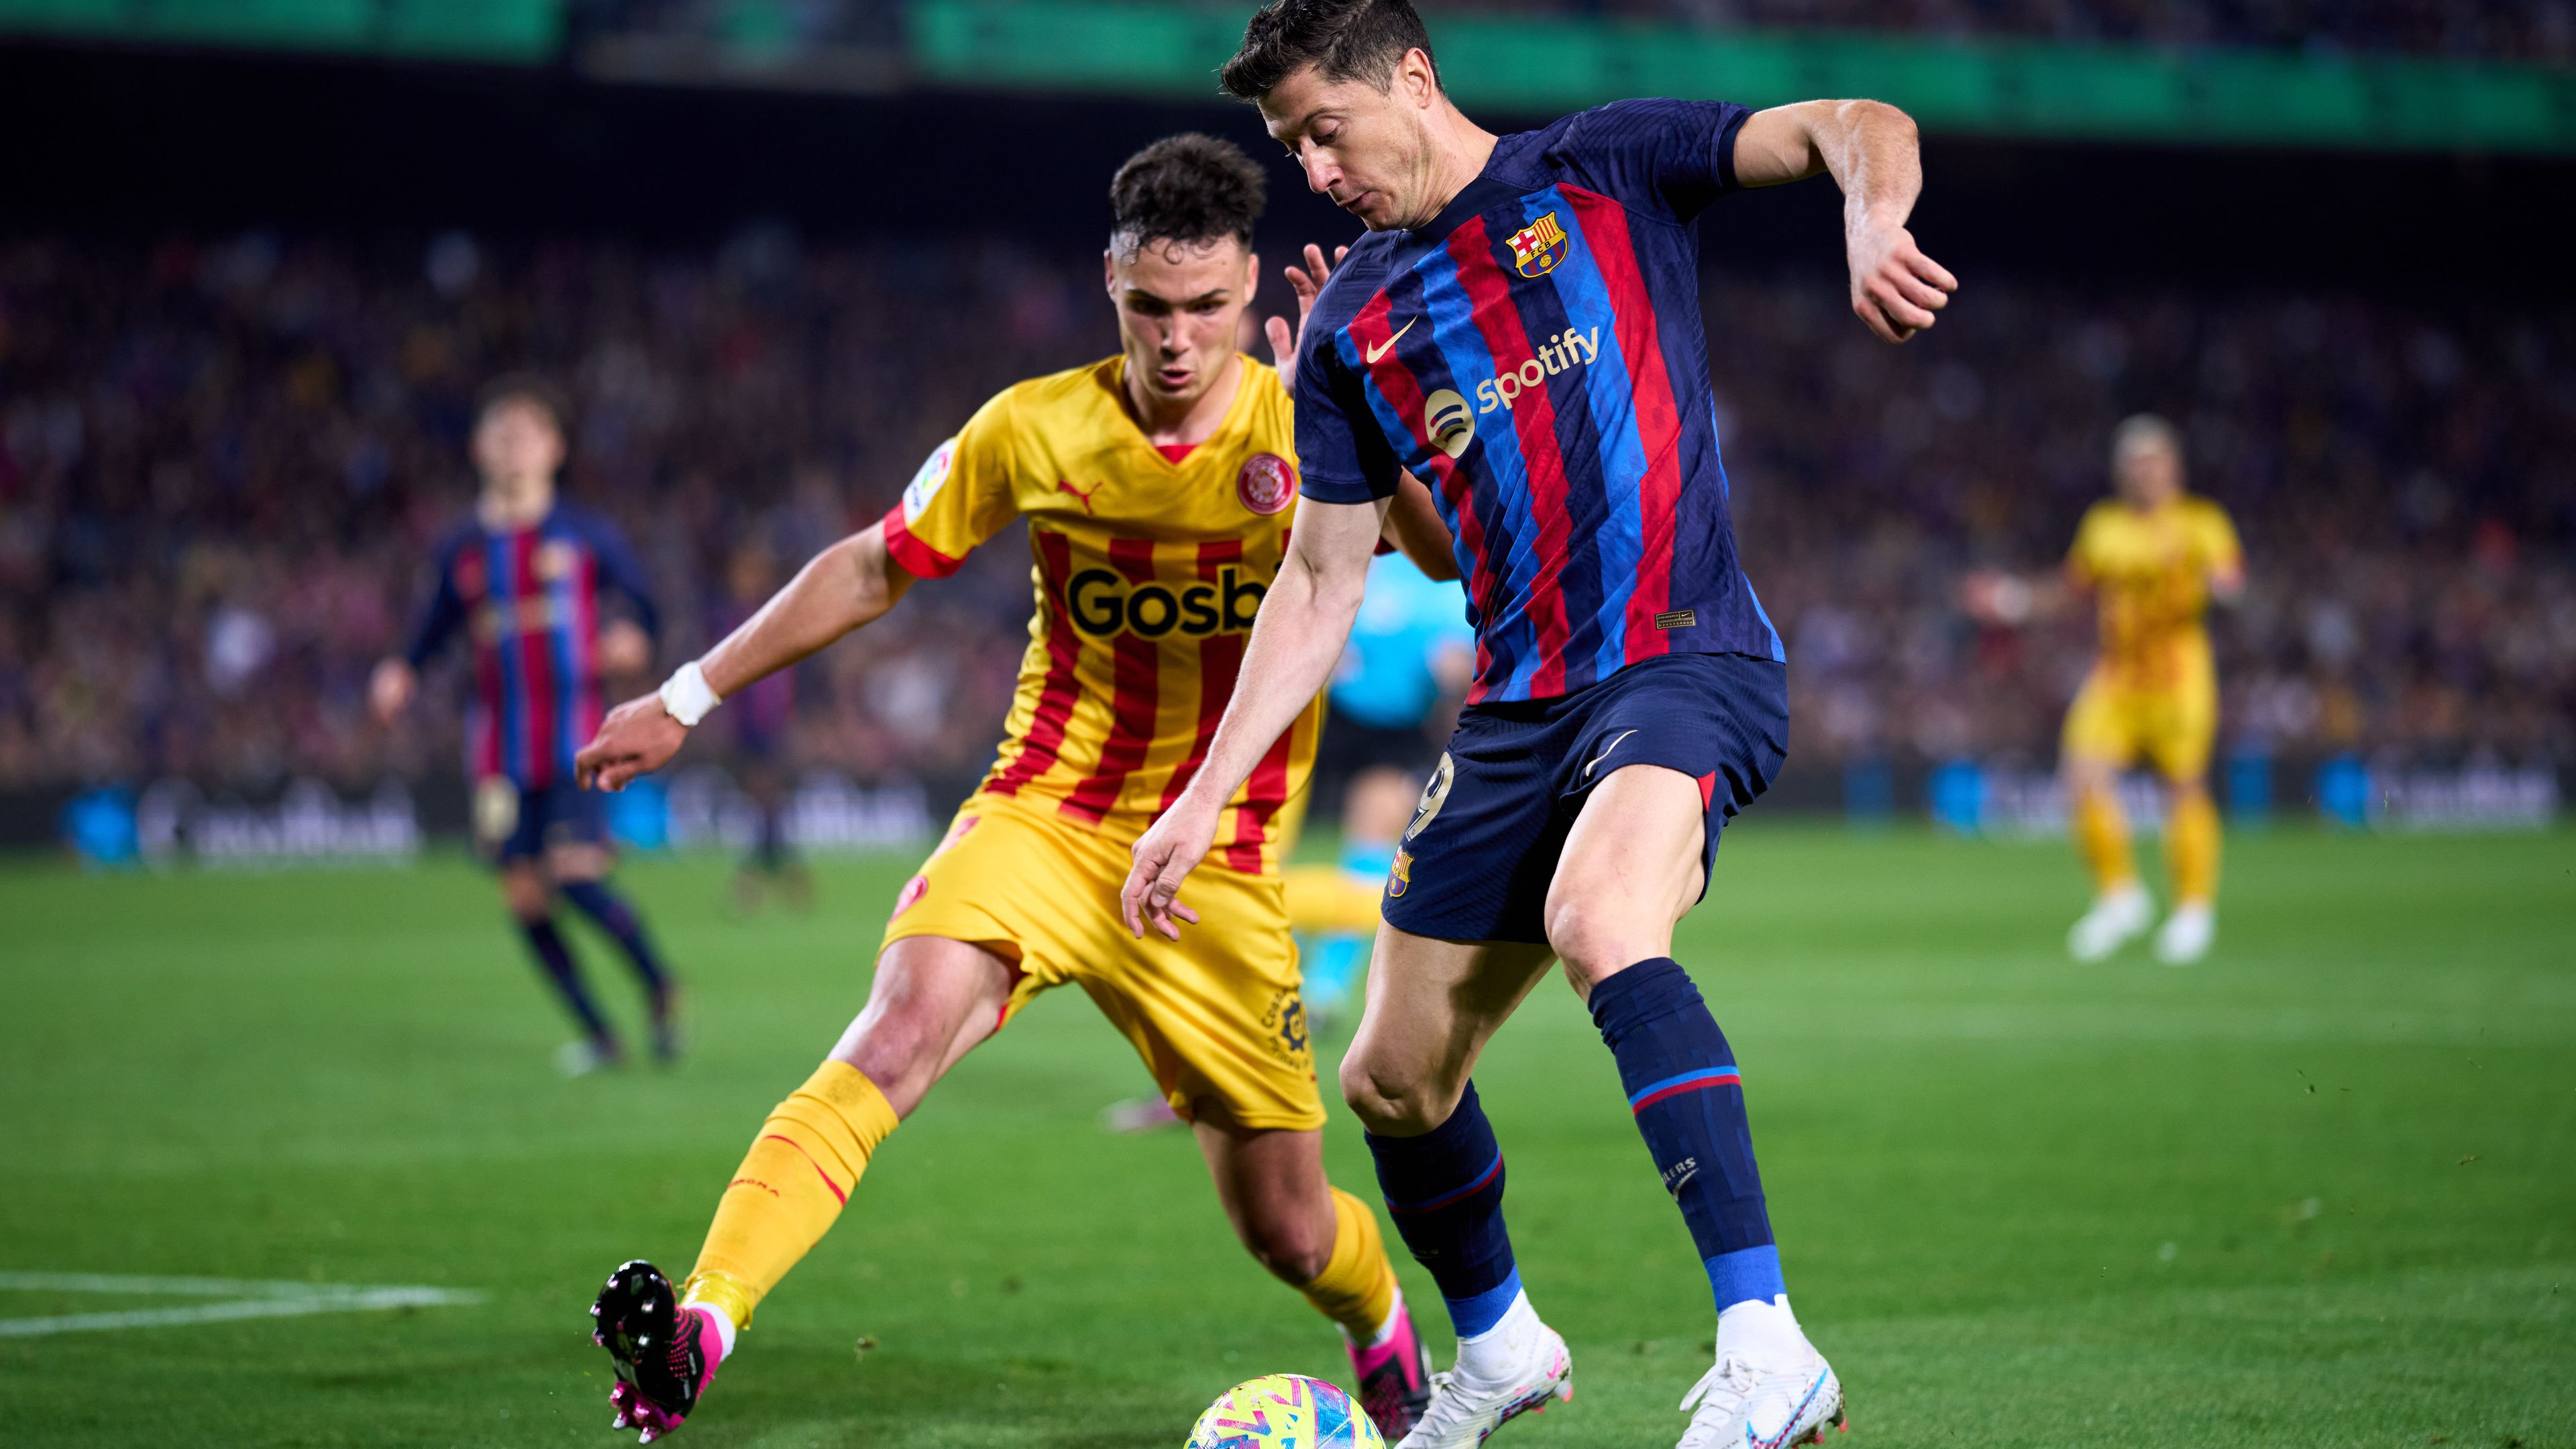 Fogadási ajánlat: a Barcelona zárkózna, a Girona megelőzné a Realt – ki nyeri a katalán rangadót?